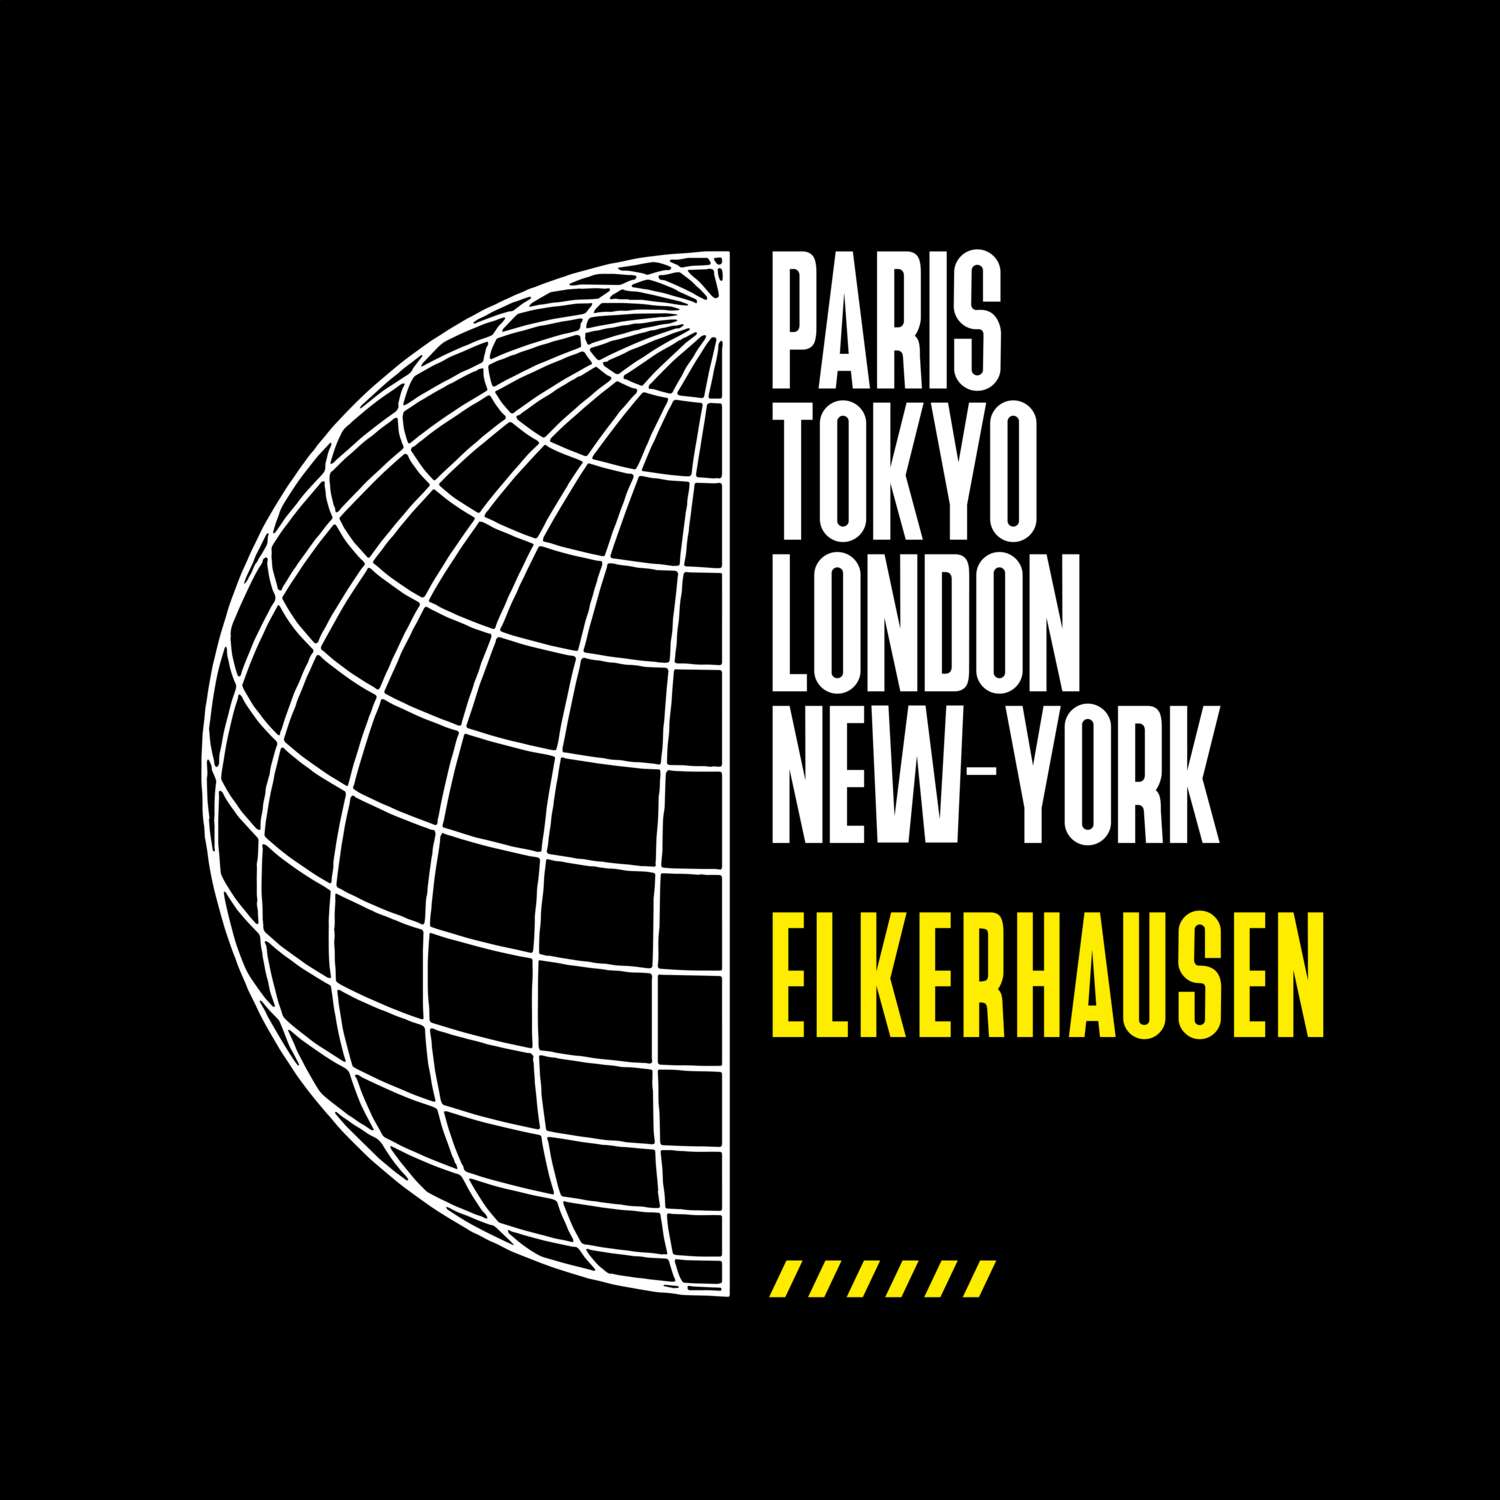 Elkerhausen T-Shirt »Paris Tokyo London«